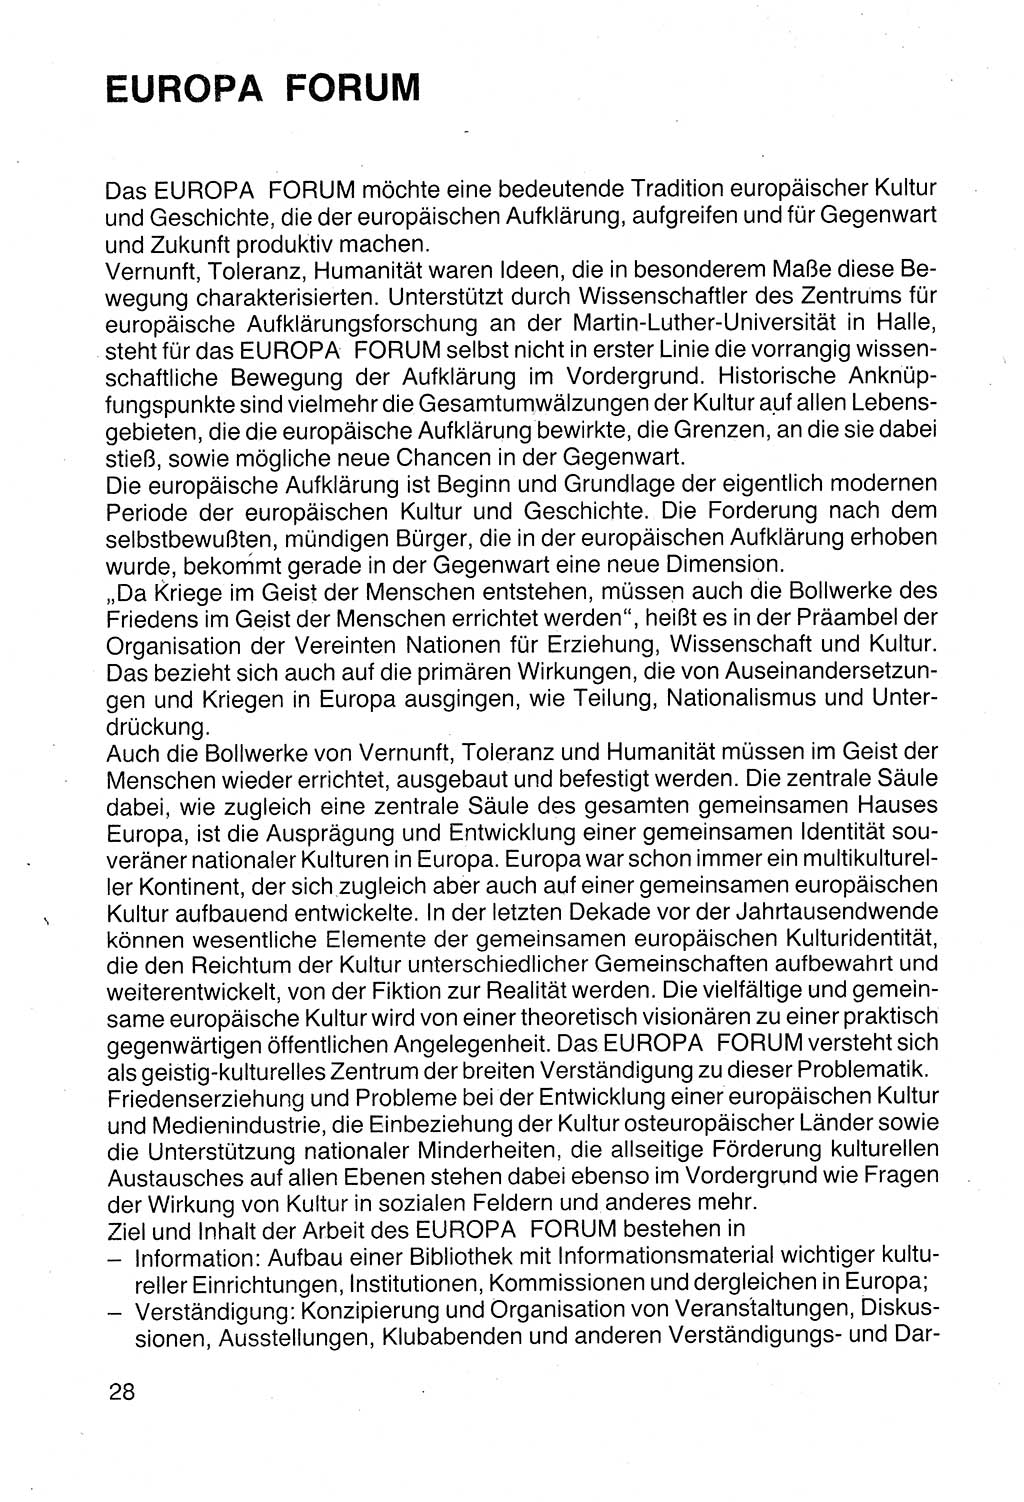 Politische Parteien und Bewegungen der DDR (Deutsche Demokratische Republik) über sich selbst 1990, Seite 28 (Pol. Part. Bew. DDR 1990, S. 28)